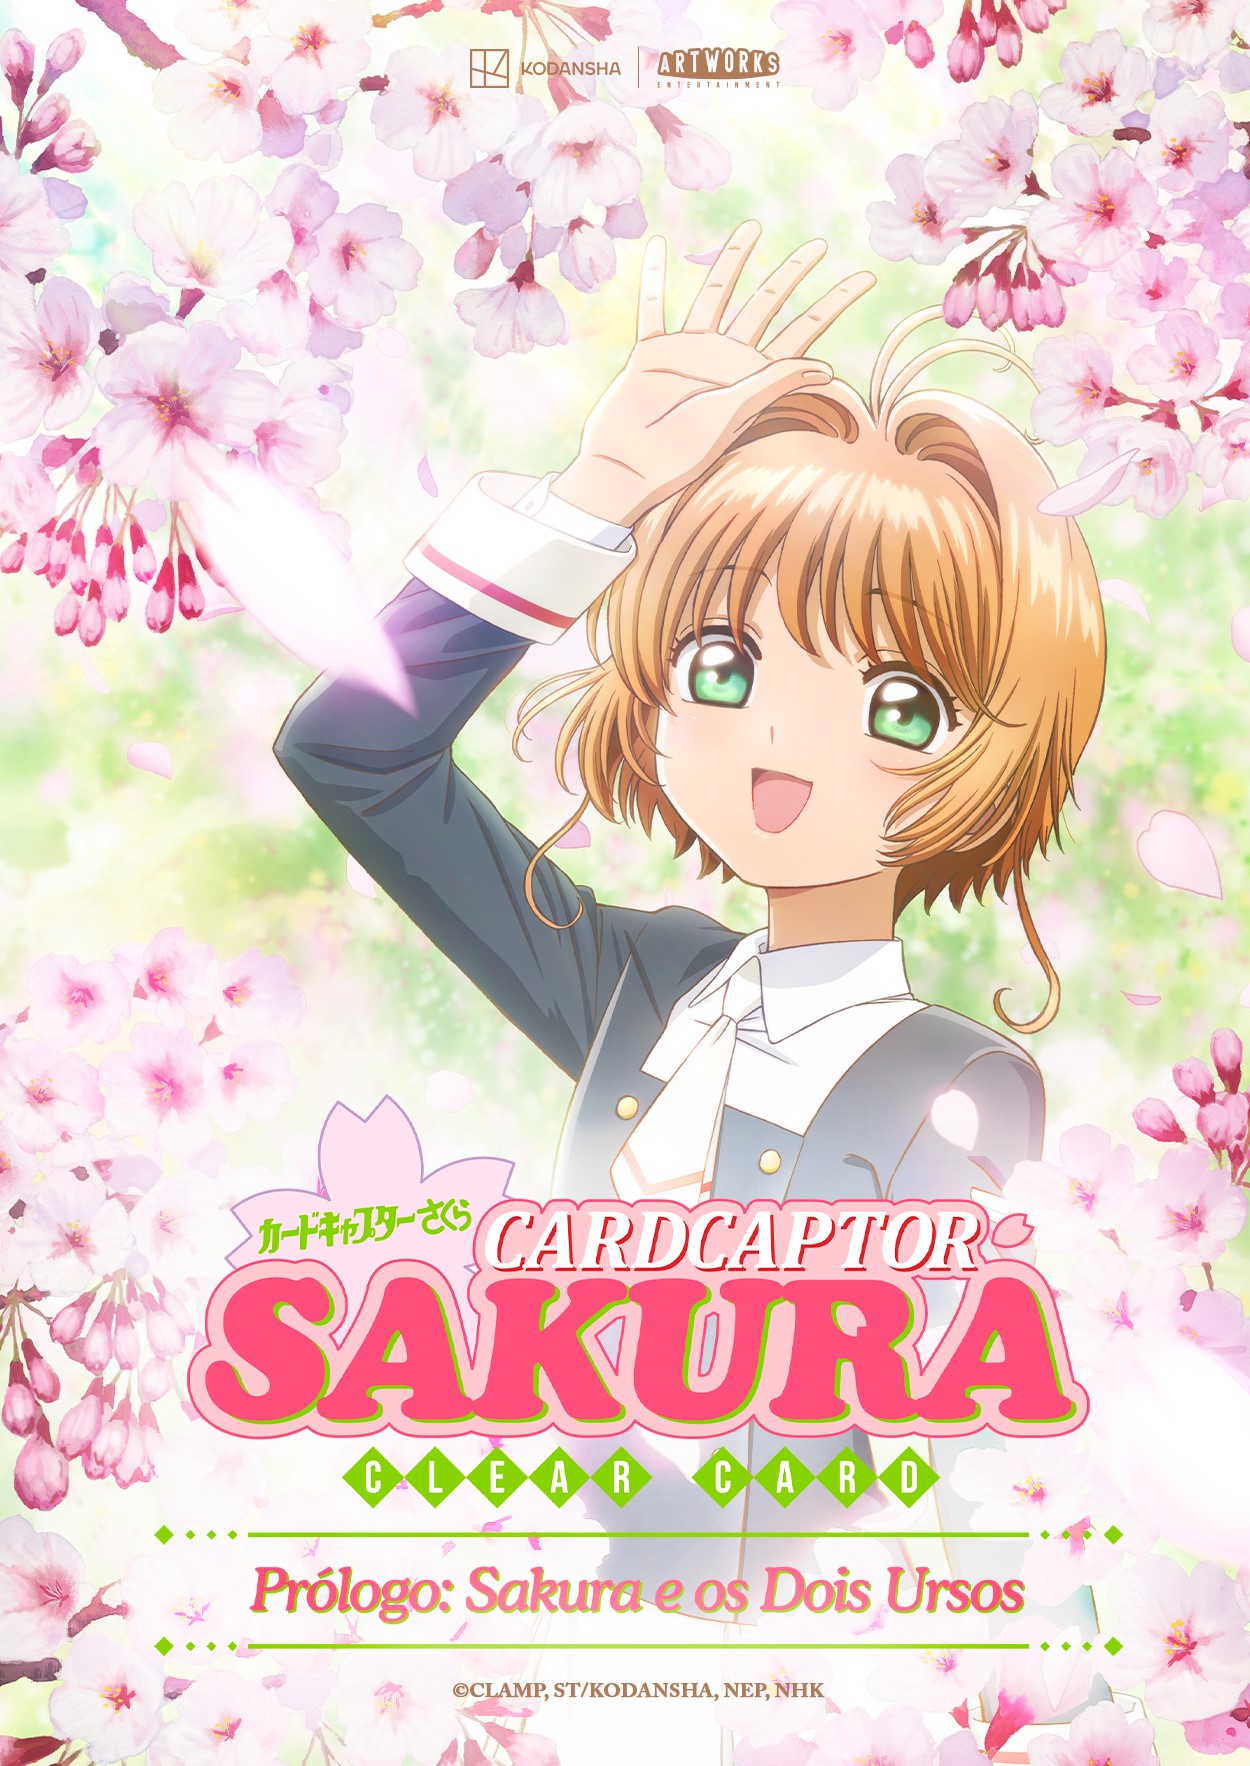 Cardcaptor Sakura: Clear Card Prólogo Sakura e dois ursos